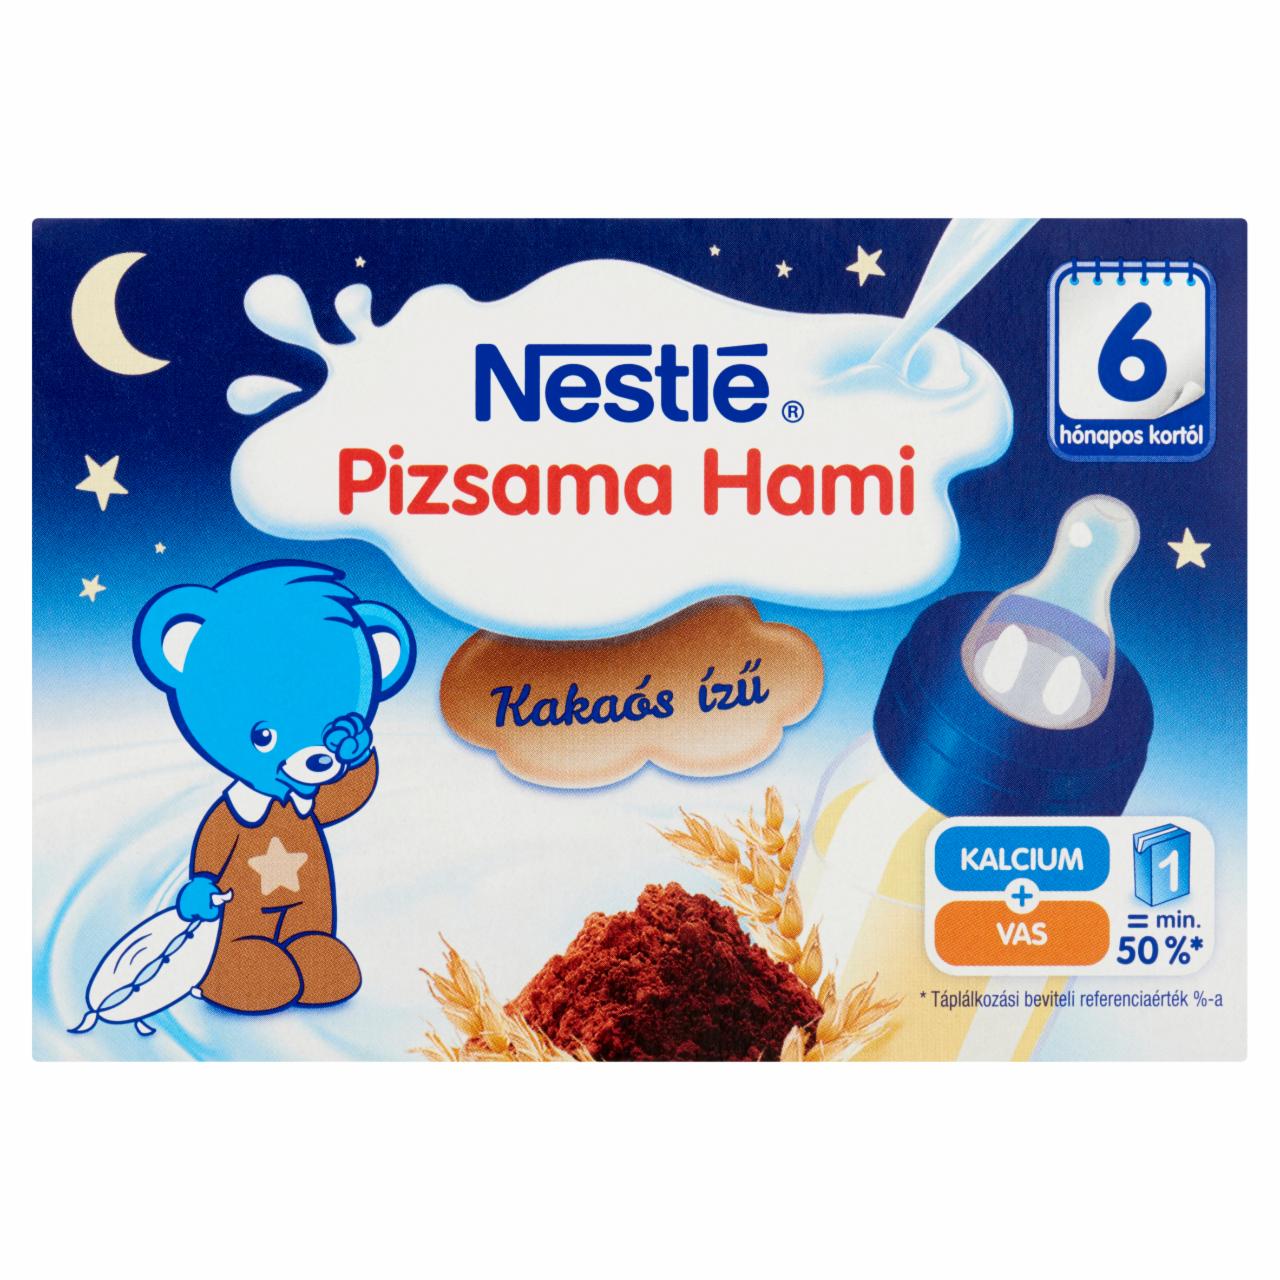 Képek - Nestlé Pizsama Hami fogyasztásra kész kakaós folyékony gabonás bébiétel 6 hónapos kortól 2 x 200 ml